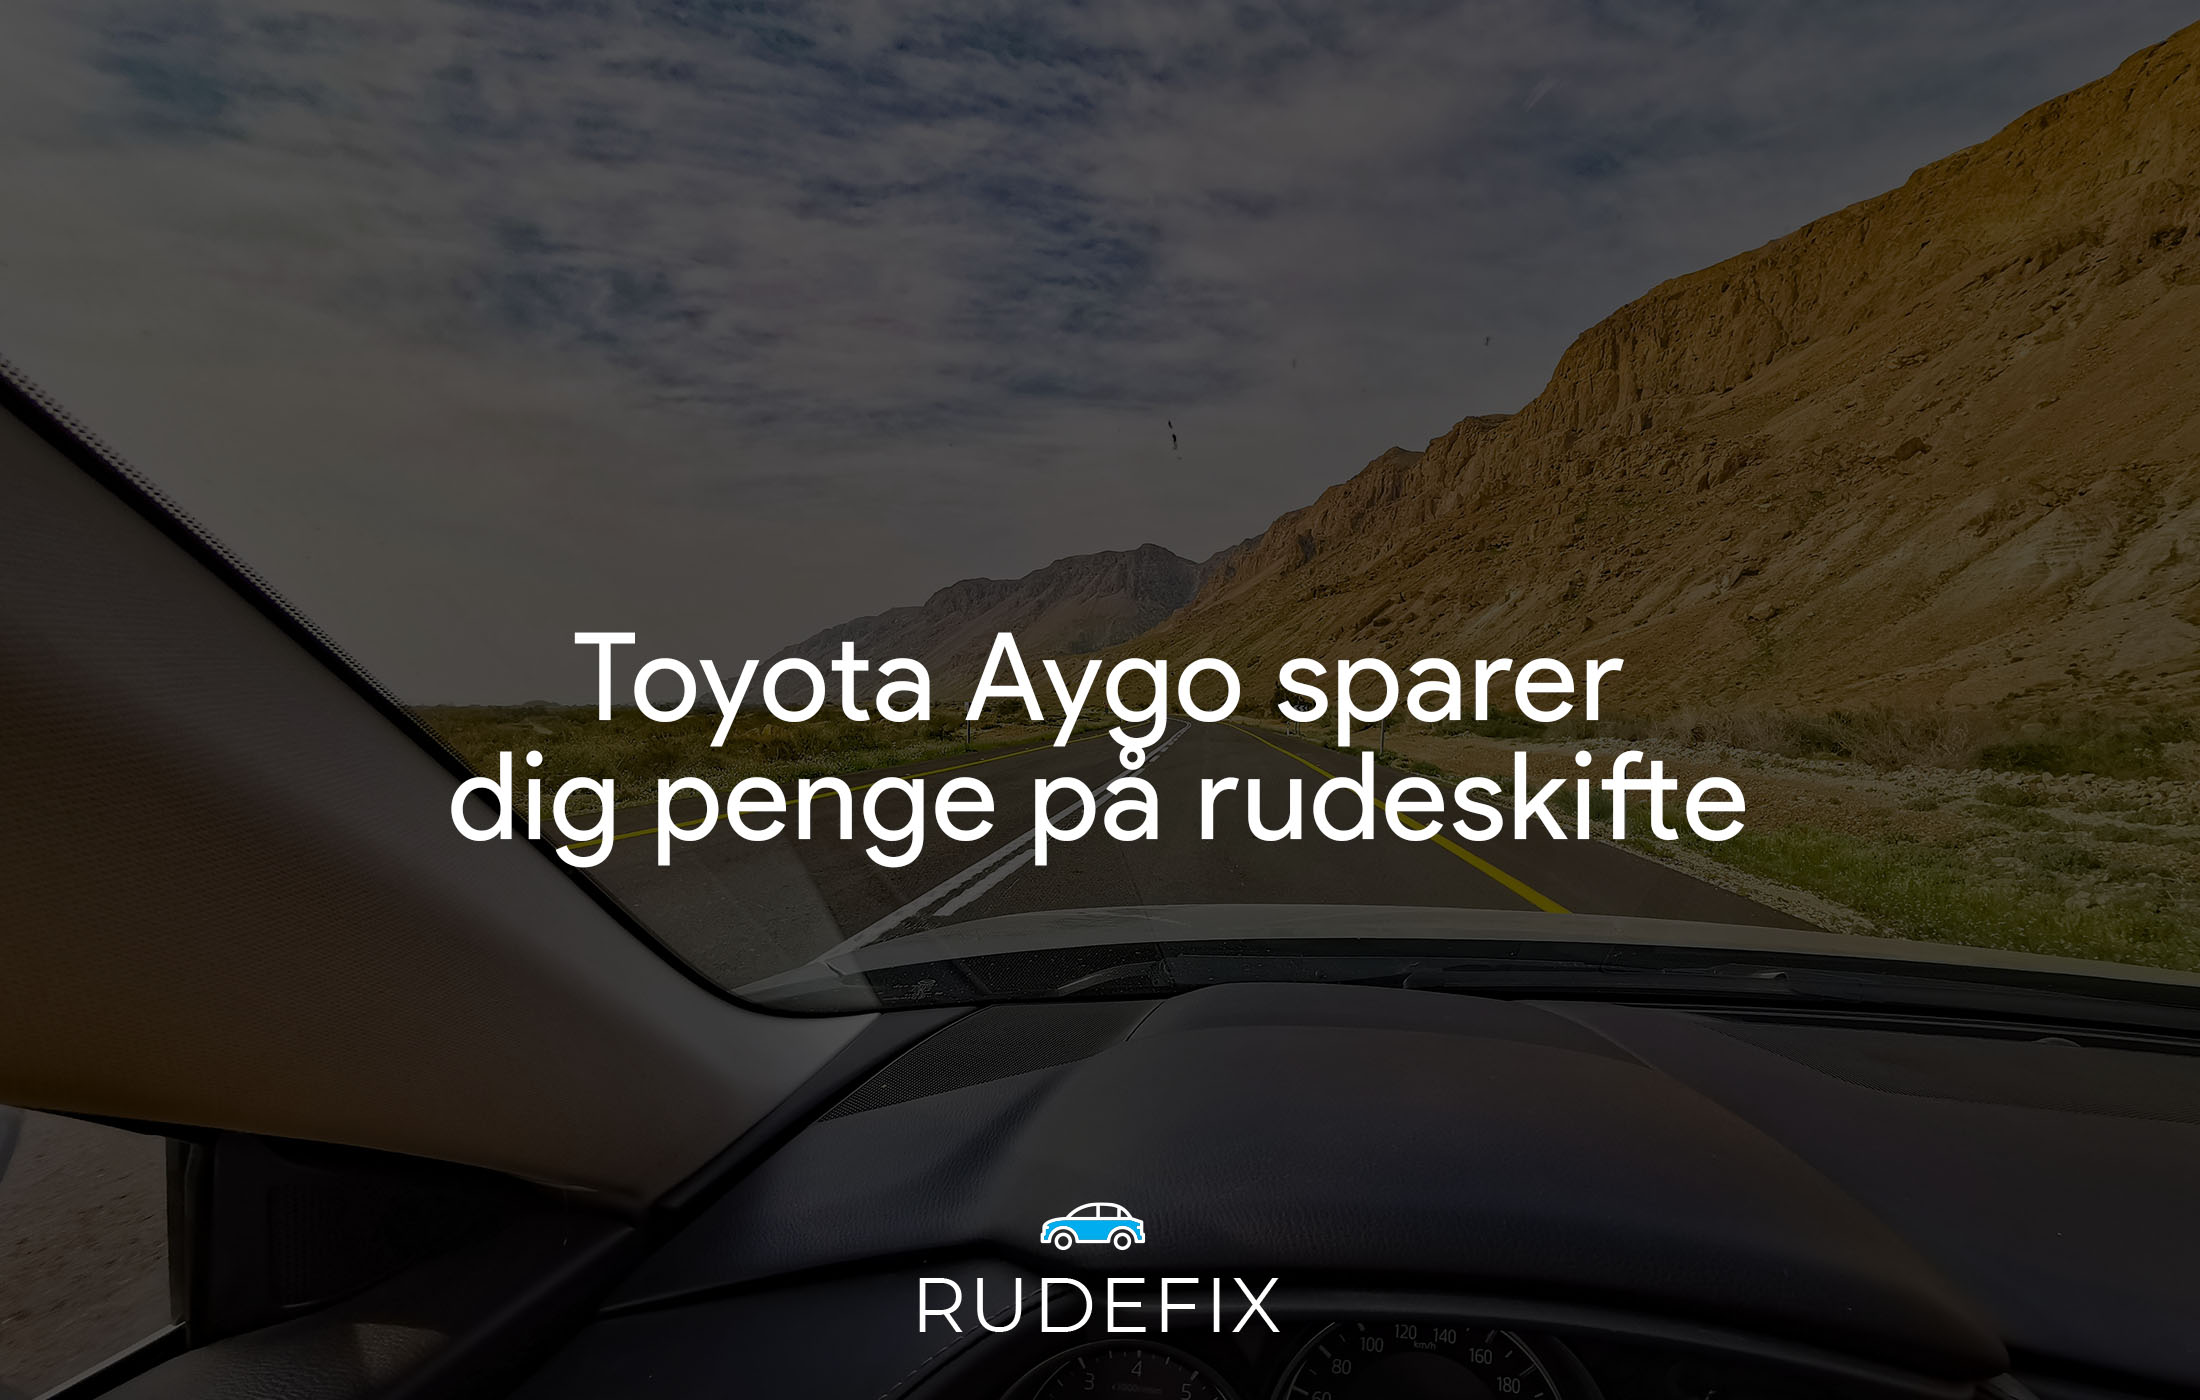 Toyota Aygo sparer dig penge på rudeskifte